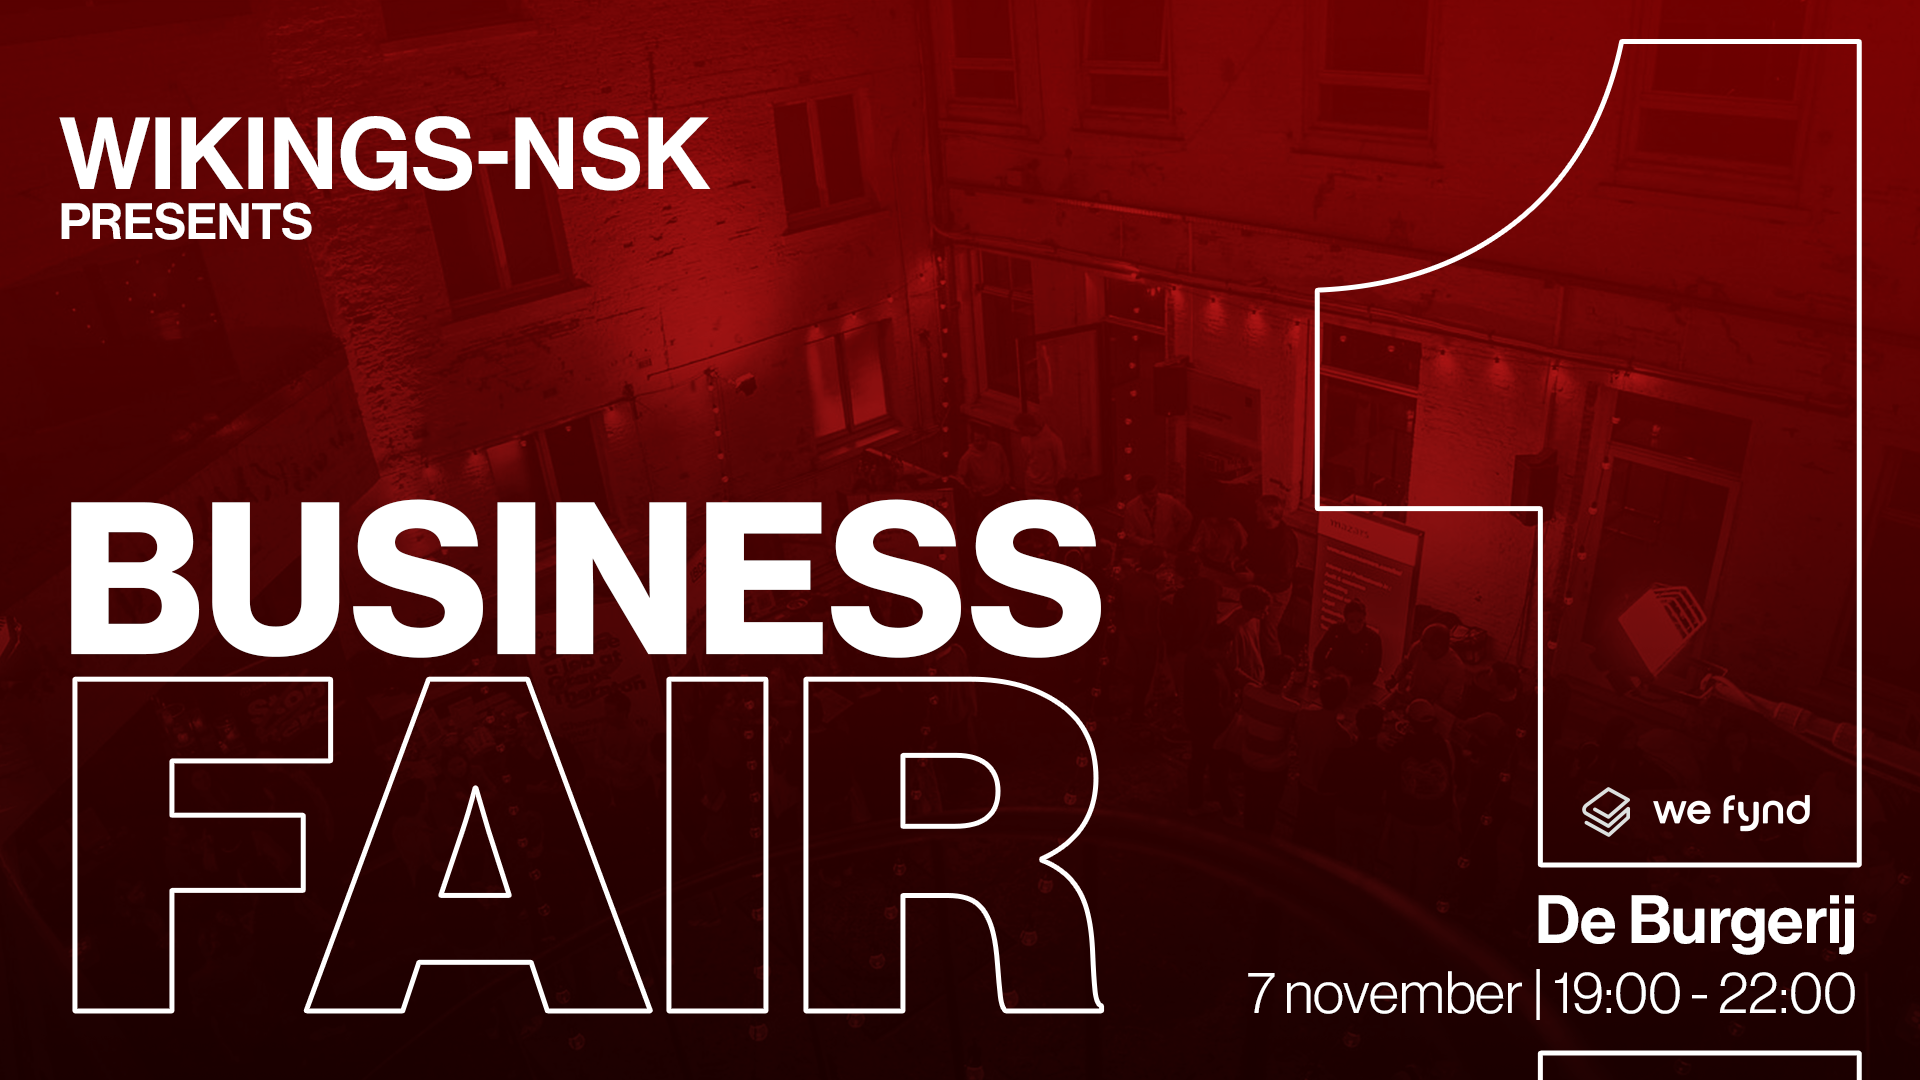 wikings-nsk-business-fair-1